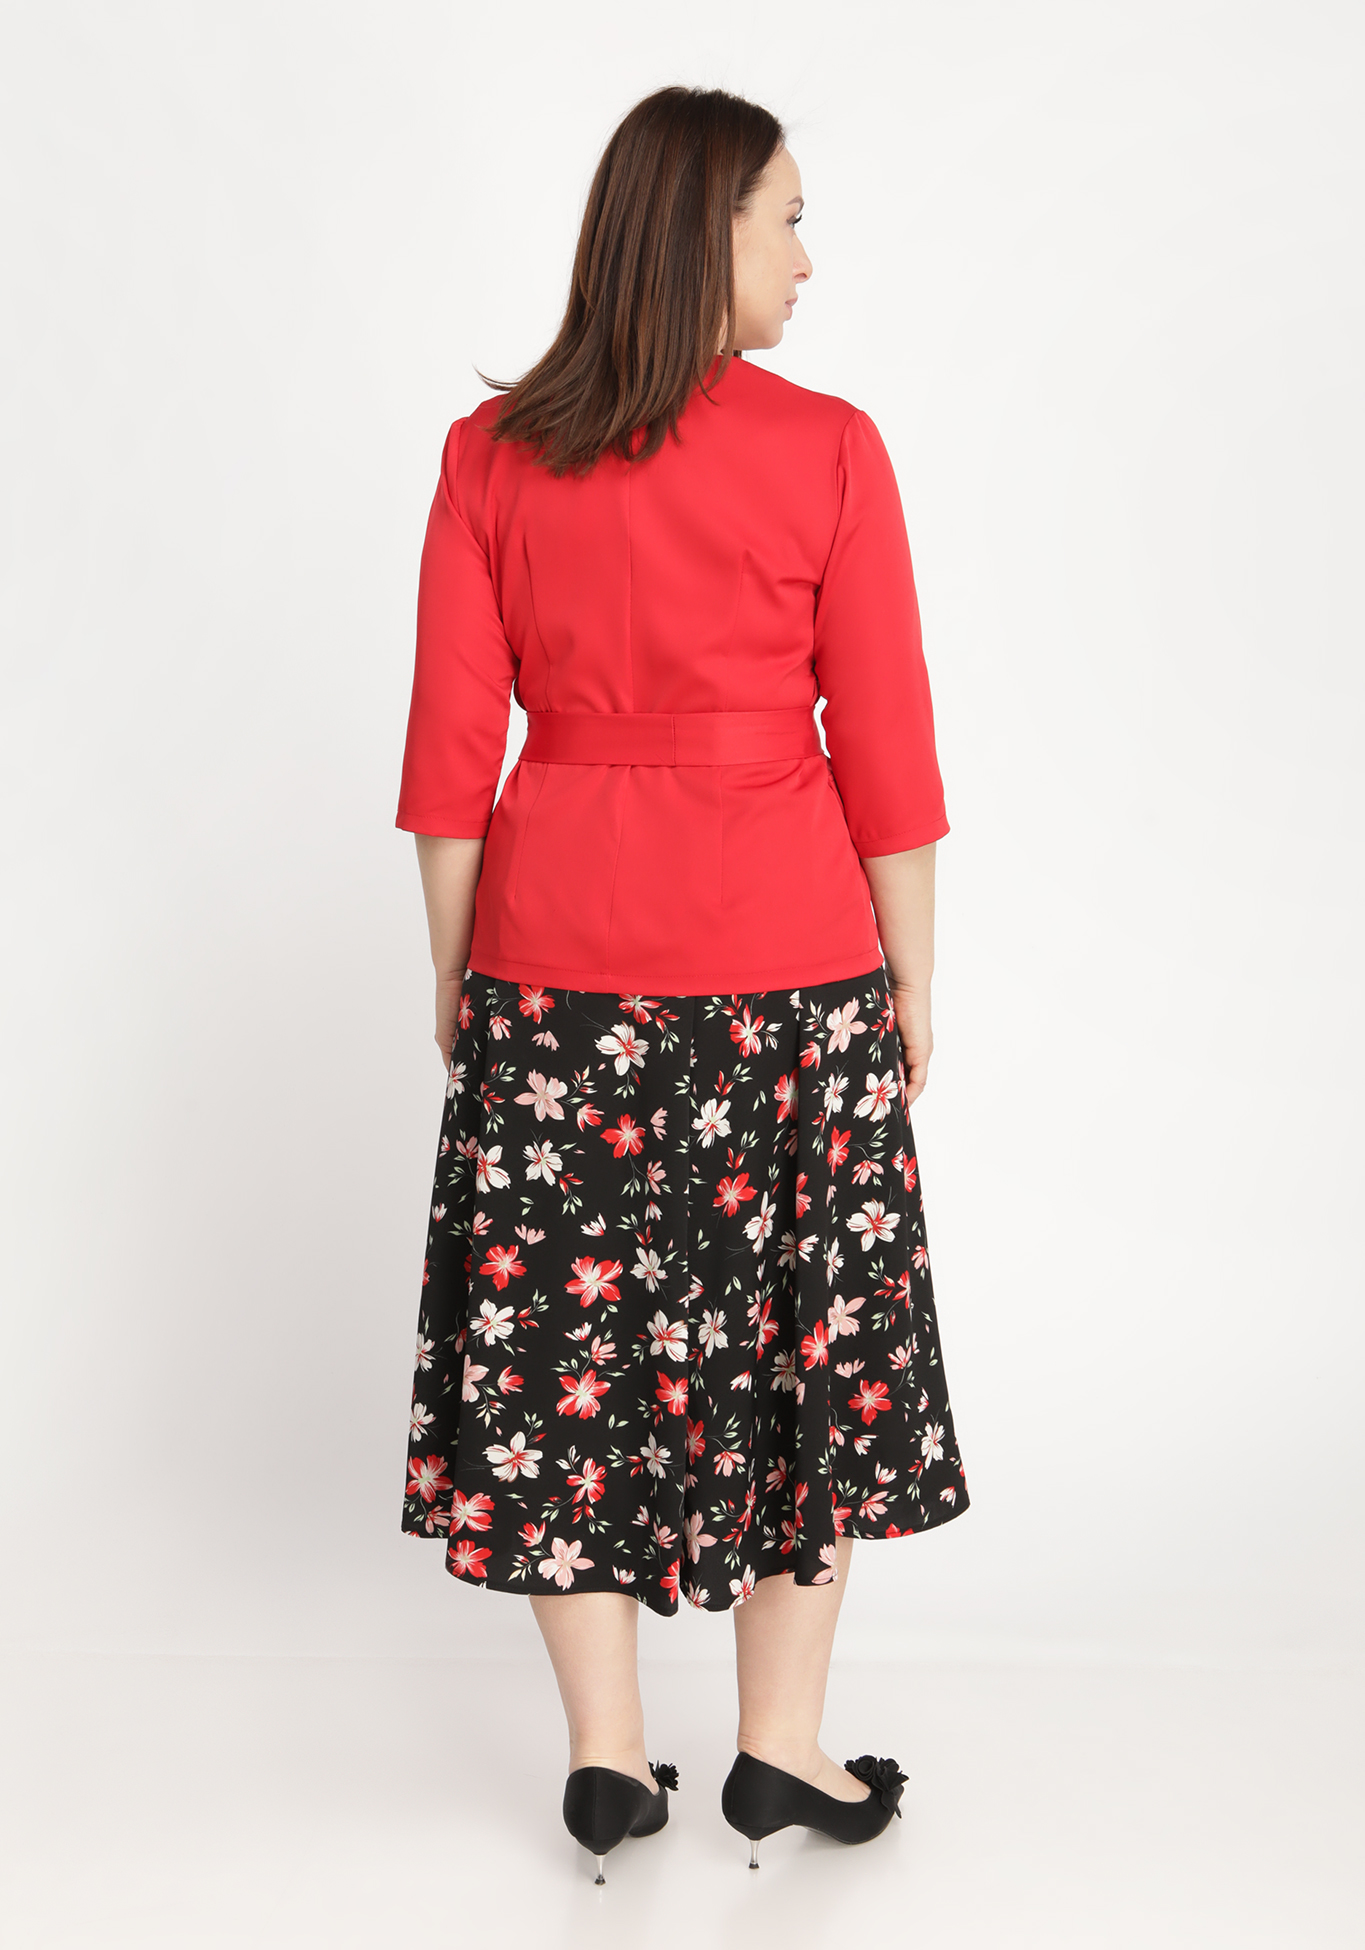 Костюм-двойка: жакет и юбка Bianka Modeno, размер 50, цвет красный - фото 8